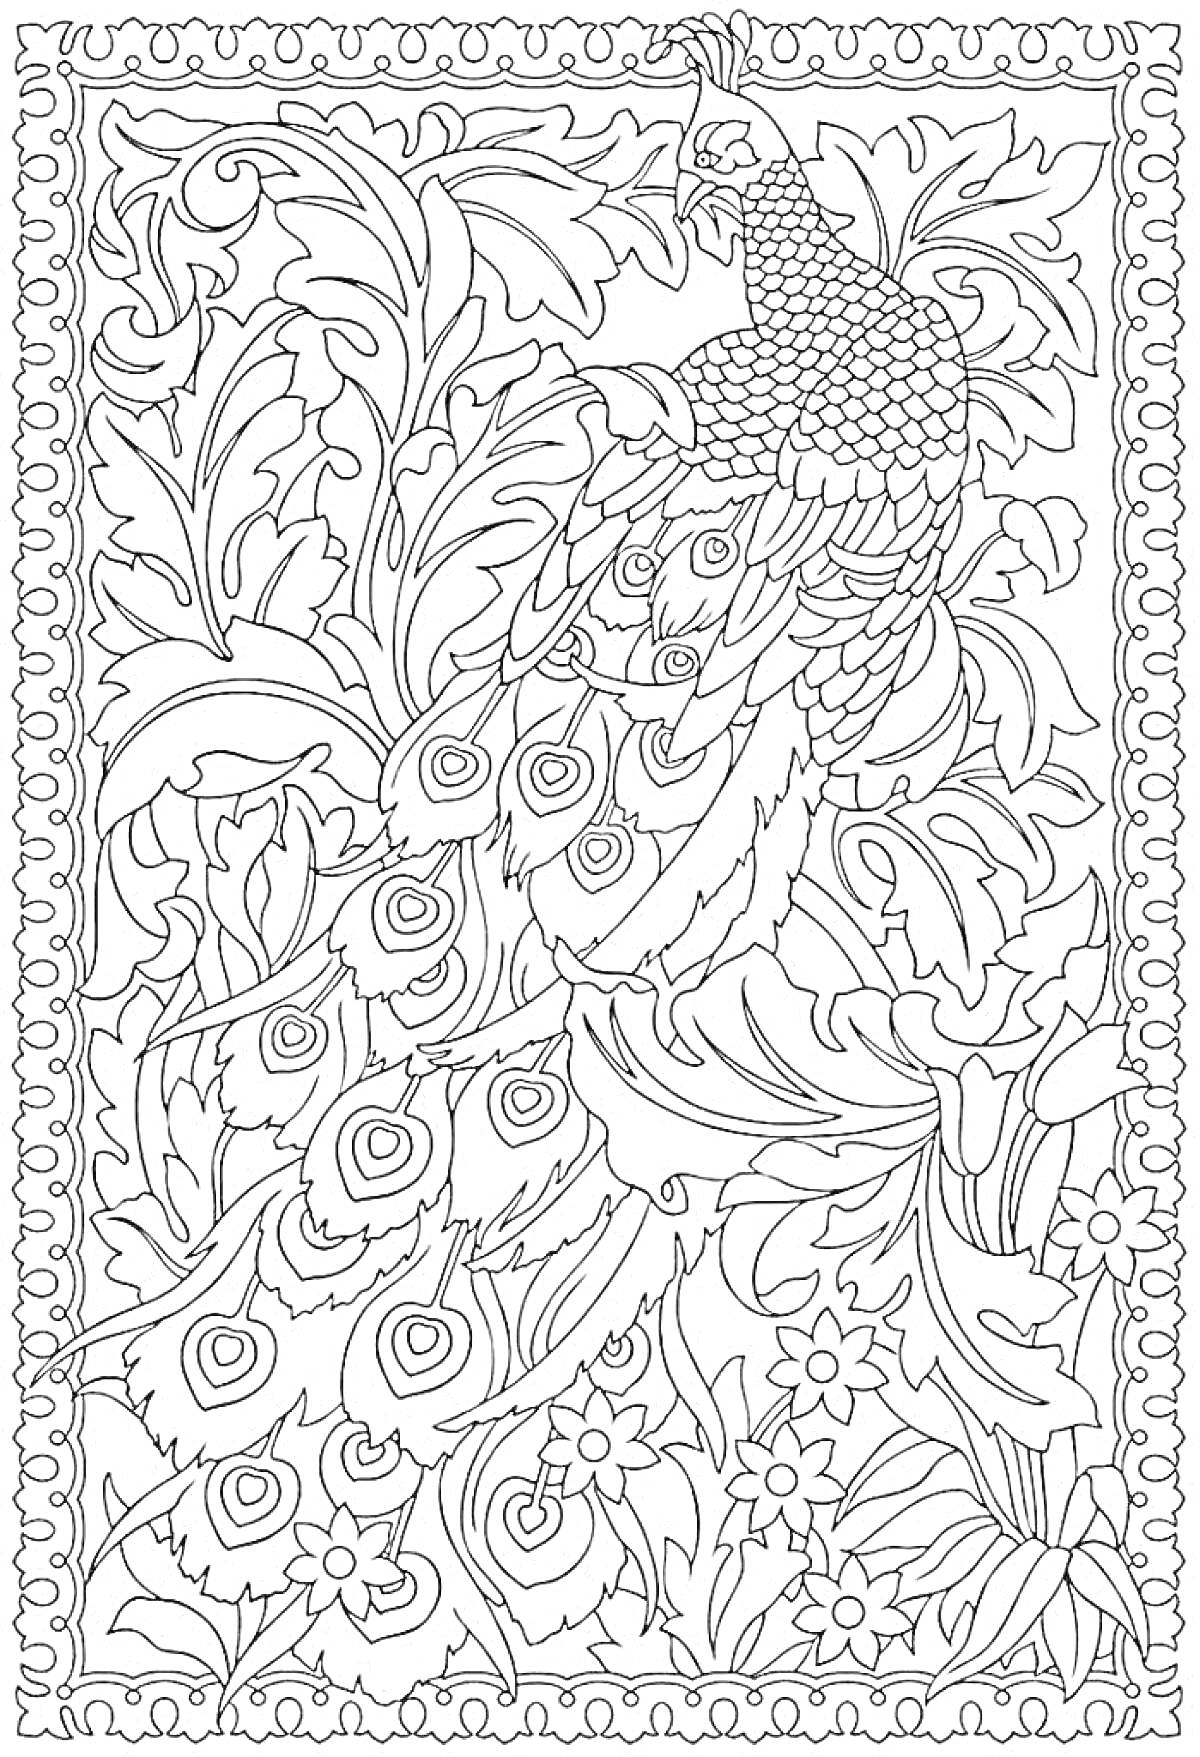 Раскраска Павлиний хвост в окружении цветов и листьев, бордюр из витажных элементов